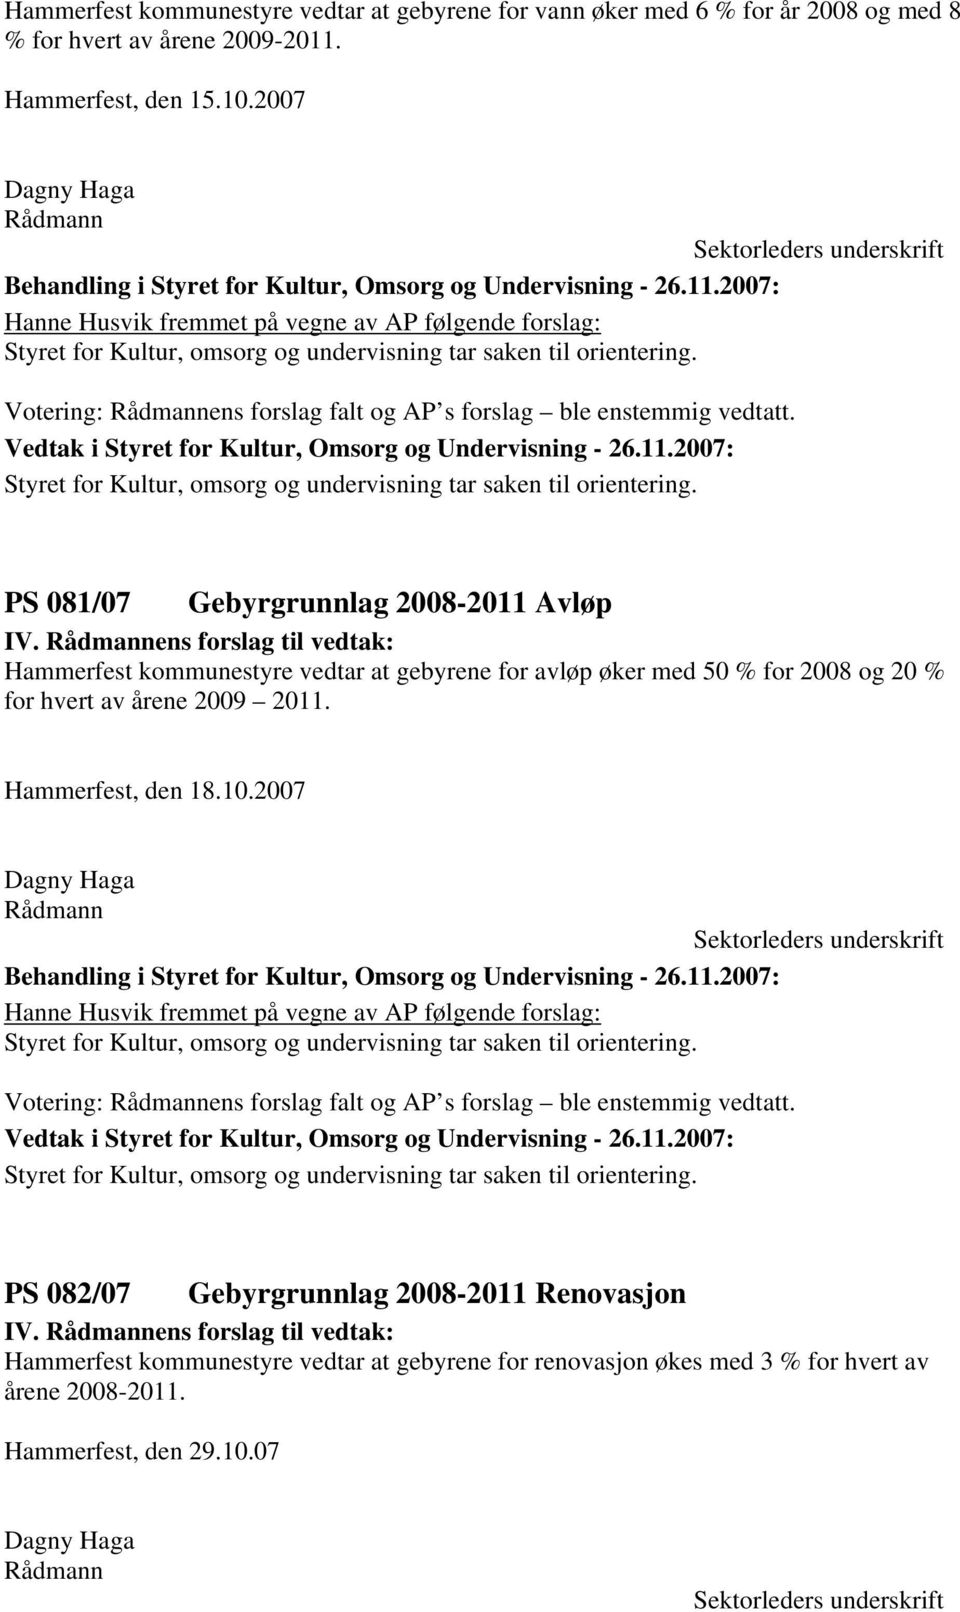 PS 081/07 Gebyrgrunnlag 2008-2011 Avløp Hammerfest kommunestyre vedtar at gebyrene for avløp øker med 50 % for 2008 og 20 % for hvert av årene 2009 2011. Hammerfest, den 18.10.